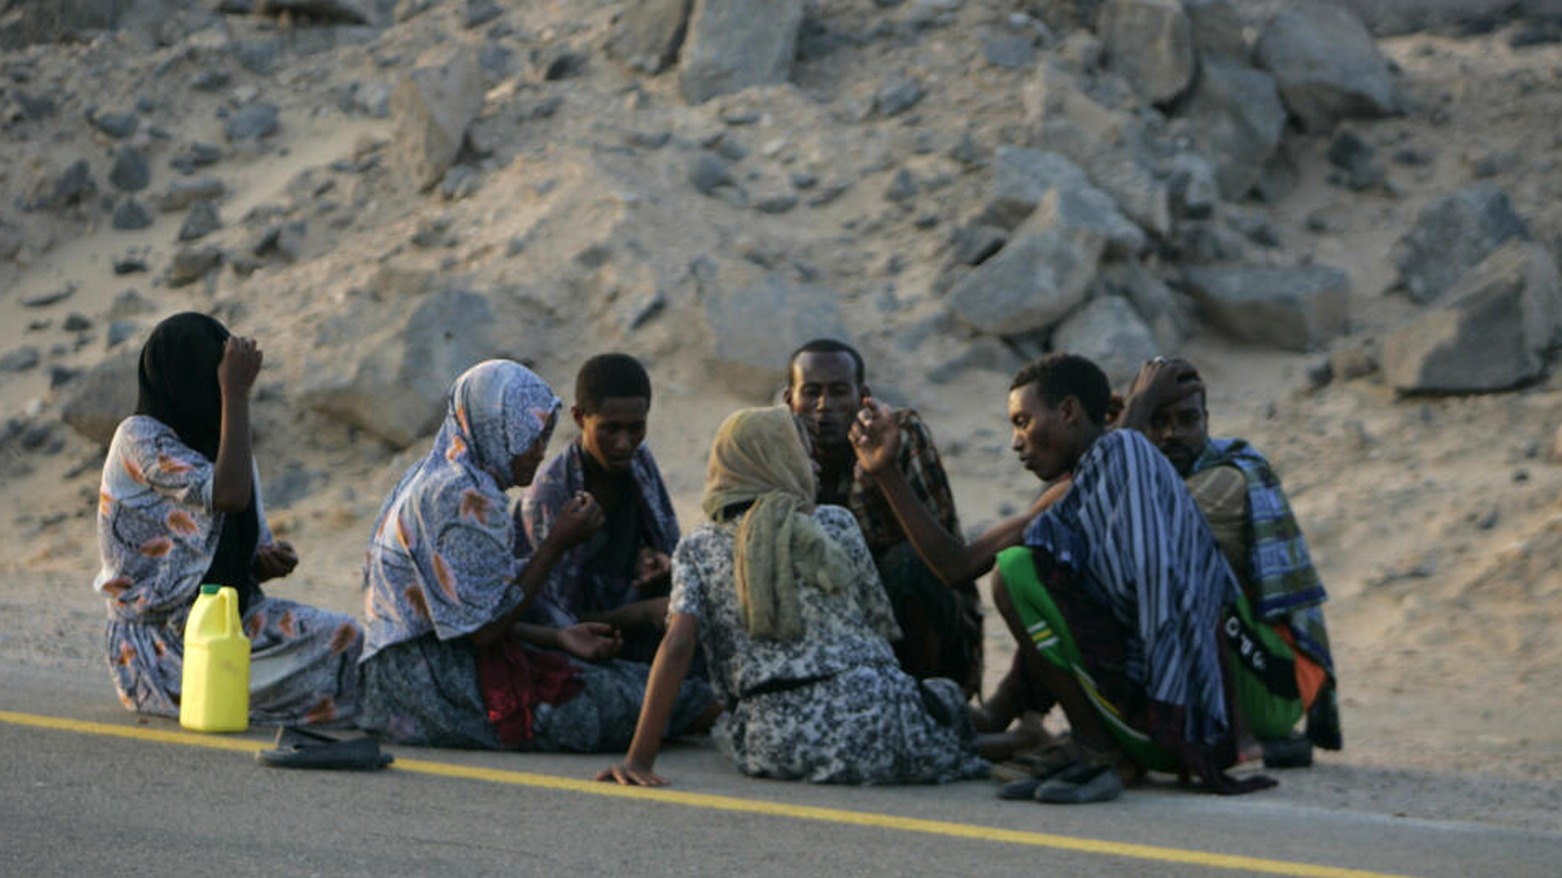 لاجئون إثيوبيون يستريحون على جانب طريق بالقرب من قرية الخبر جنوب اليمن، بعد وصولهم على متن قارب مهربين قادمين من الصومال. © رويترز